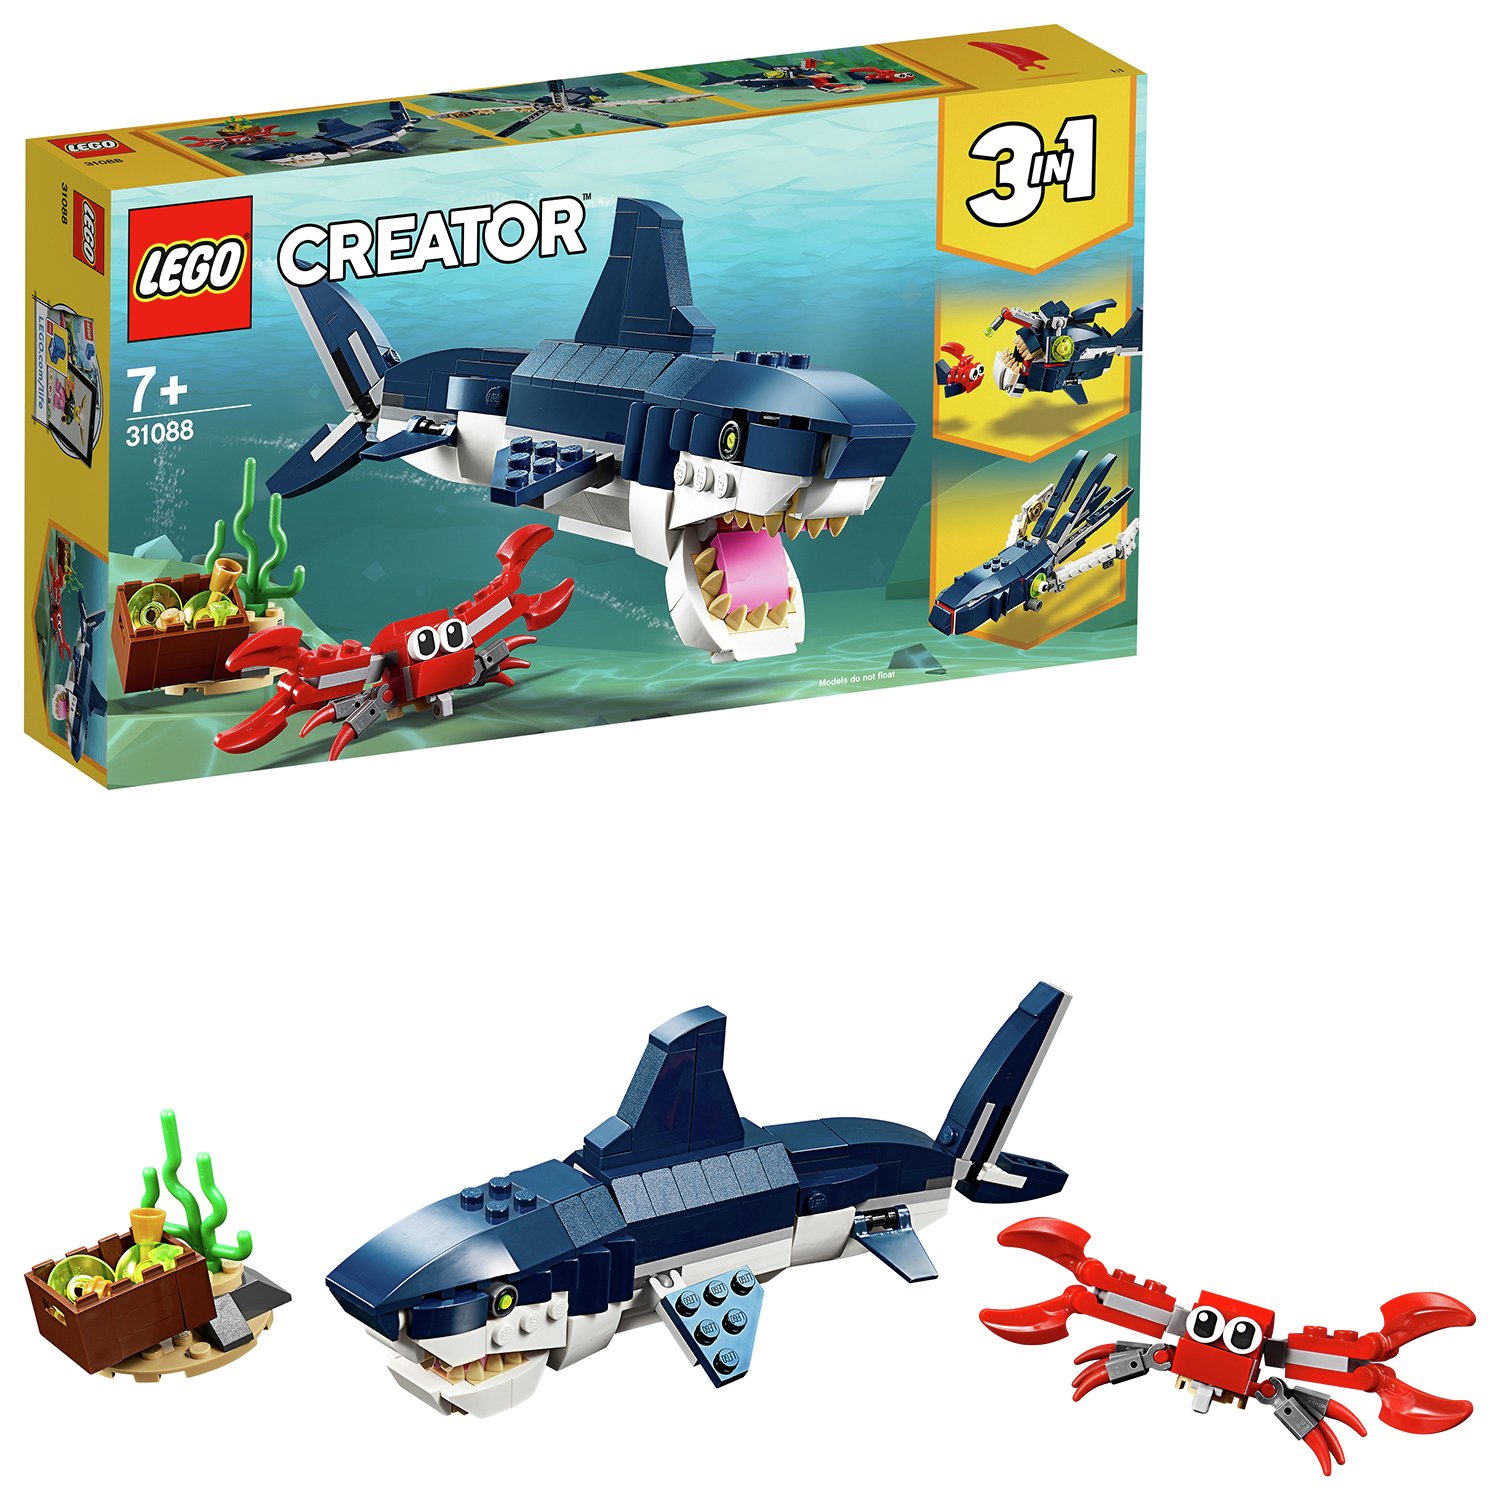 LEGO Creator Deep Sea Creatures Toy Shark Playset - 31088 